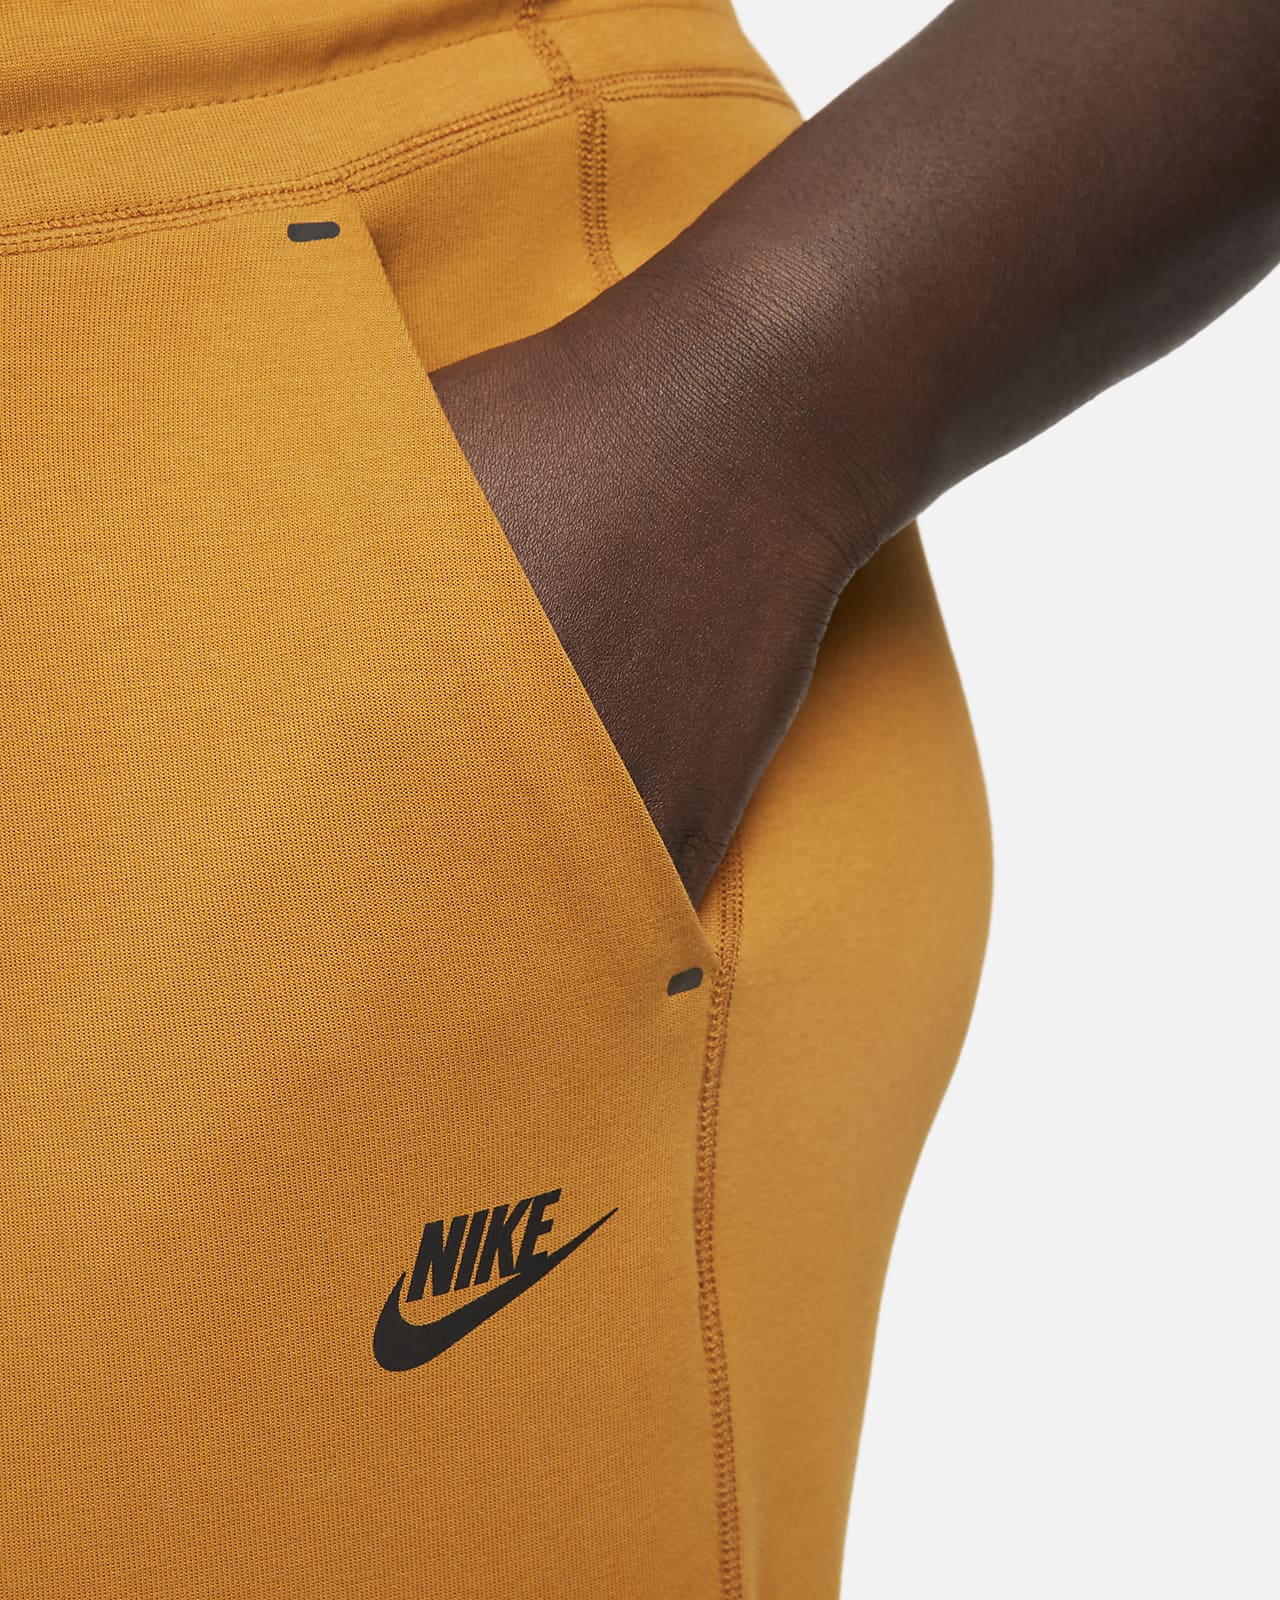 Ondergedompeld Startpunt heel veel Nike Sportswear Tech Fleece Women's Pants (Plus Size). Nike.com